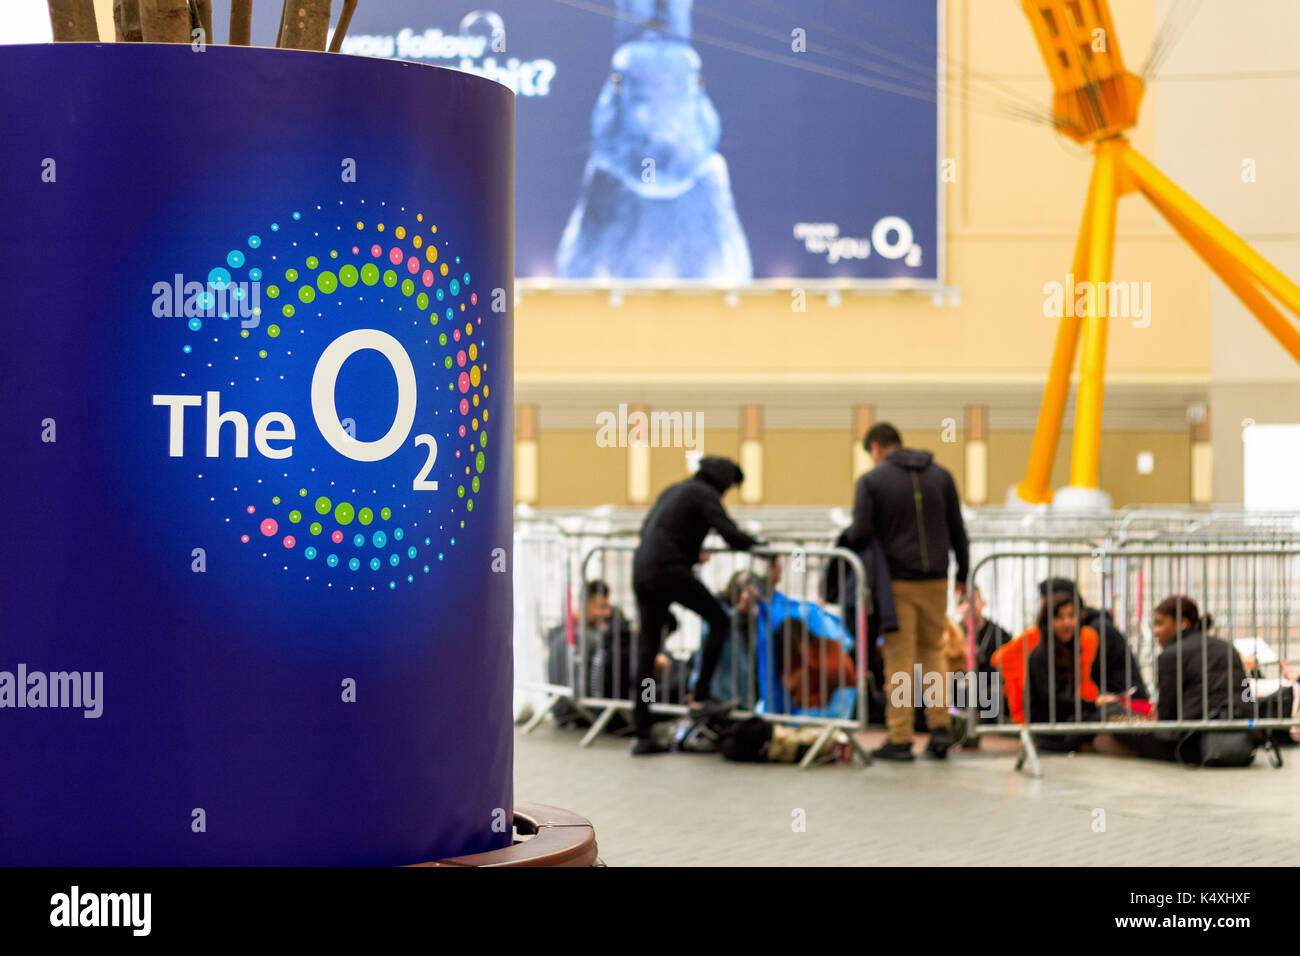 London, Regno Unito - 15 agosto 2017 - interno dell'arena O2 con il suo logo in primo piano e le persone in coda per un evento in background Foto Stock